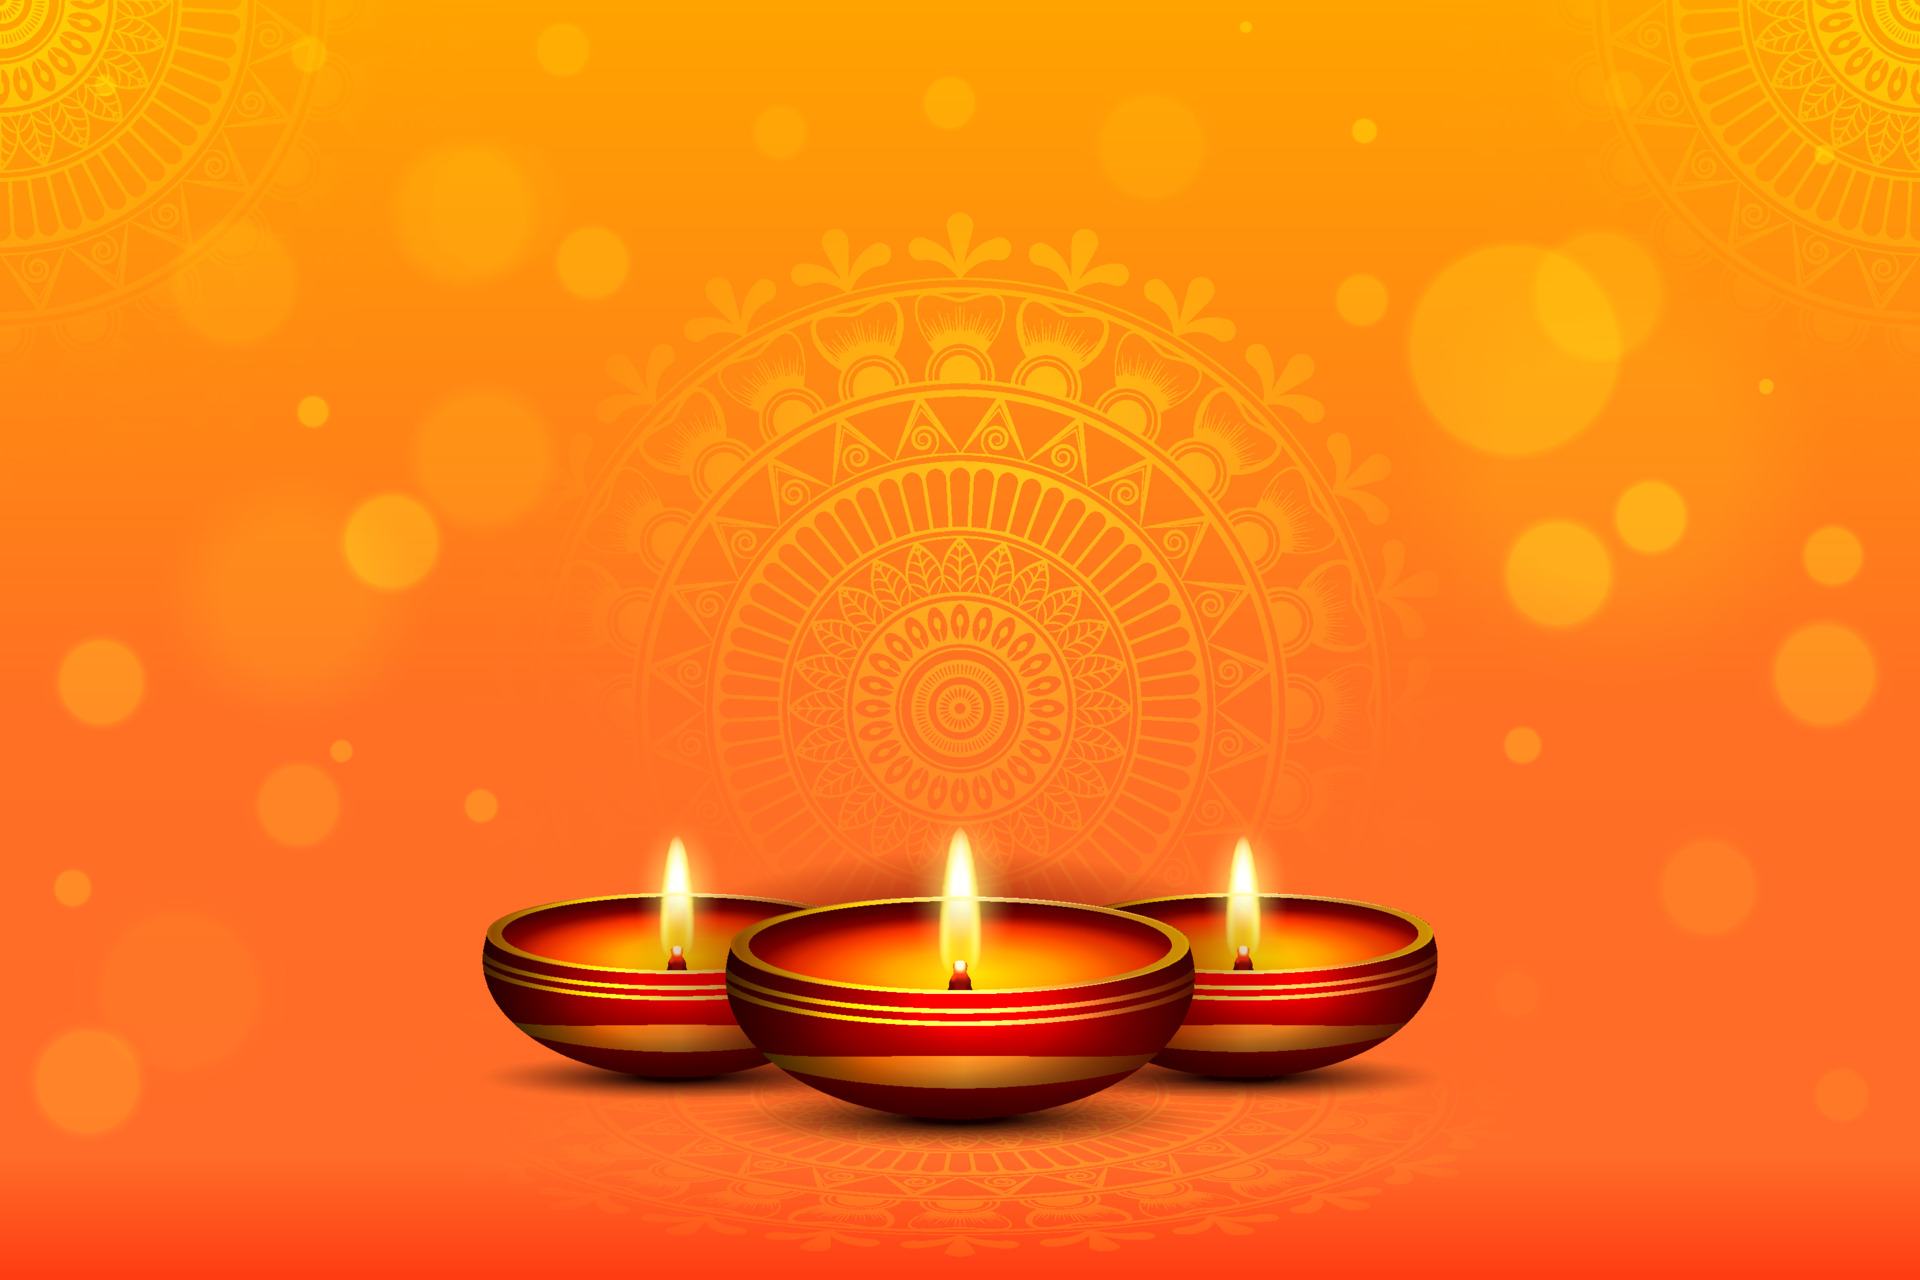 Hãy tận hưởng một mùa Diwali vui vẻ đầy đủ tinh thần với những chiếc đèn dầu sống động. Đây là một trong những biểu tượng đặc trưng nhất của lễ hội Diwali và chắc chắn sẽ làm cho không khí của ngôi làng thêm phần ấm cúng.